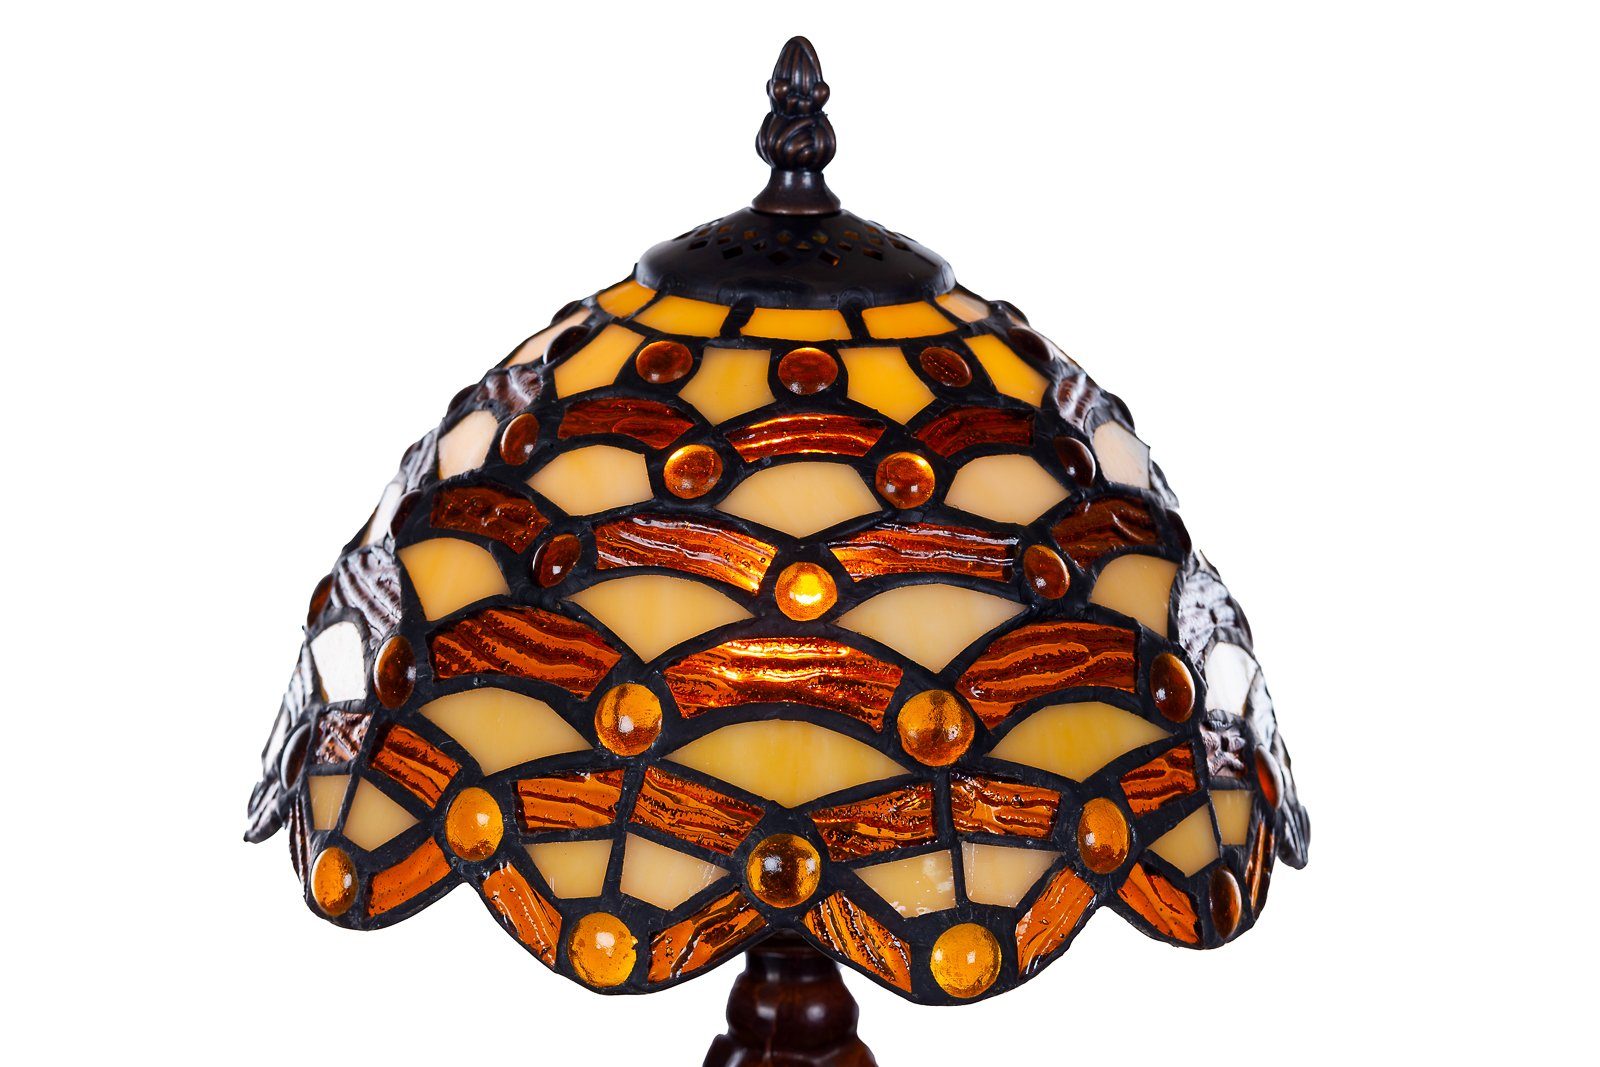 Motiv Ti156 BIRENDY Lampe Waben Steine Tiffany Tischlampe Dekorationslampe Stehlampe